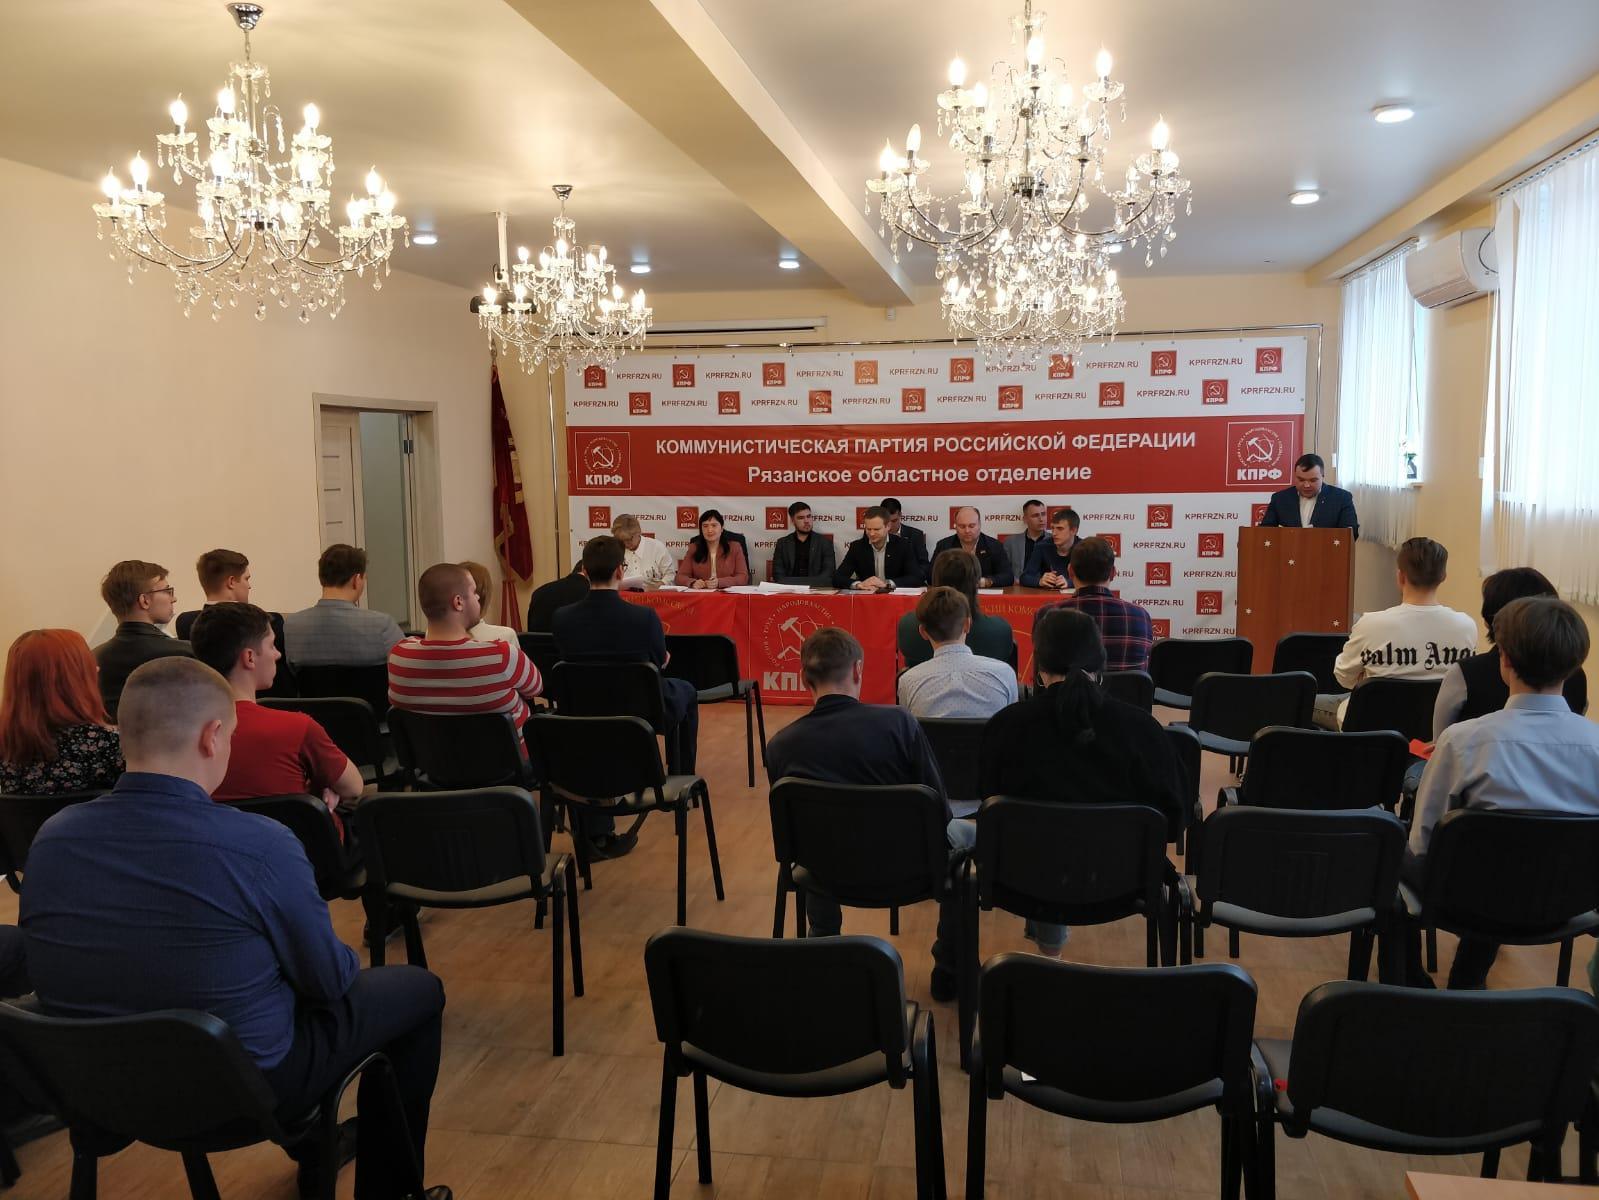 9 апреля в Рязани состоялась VIII отчётно-выборная Конференция Рязанского областного отделения комсомола